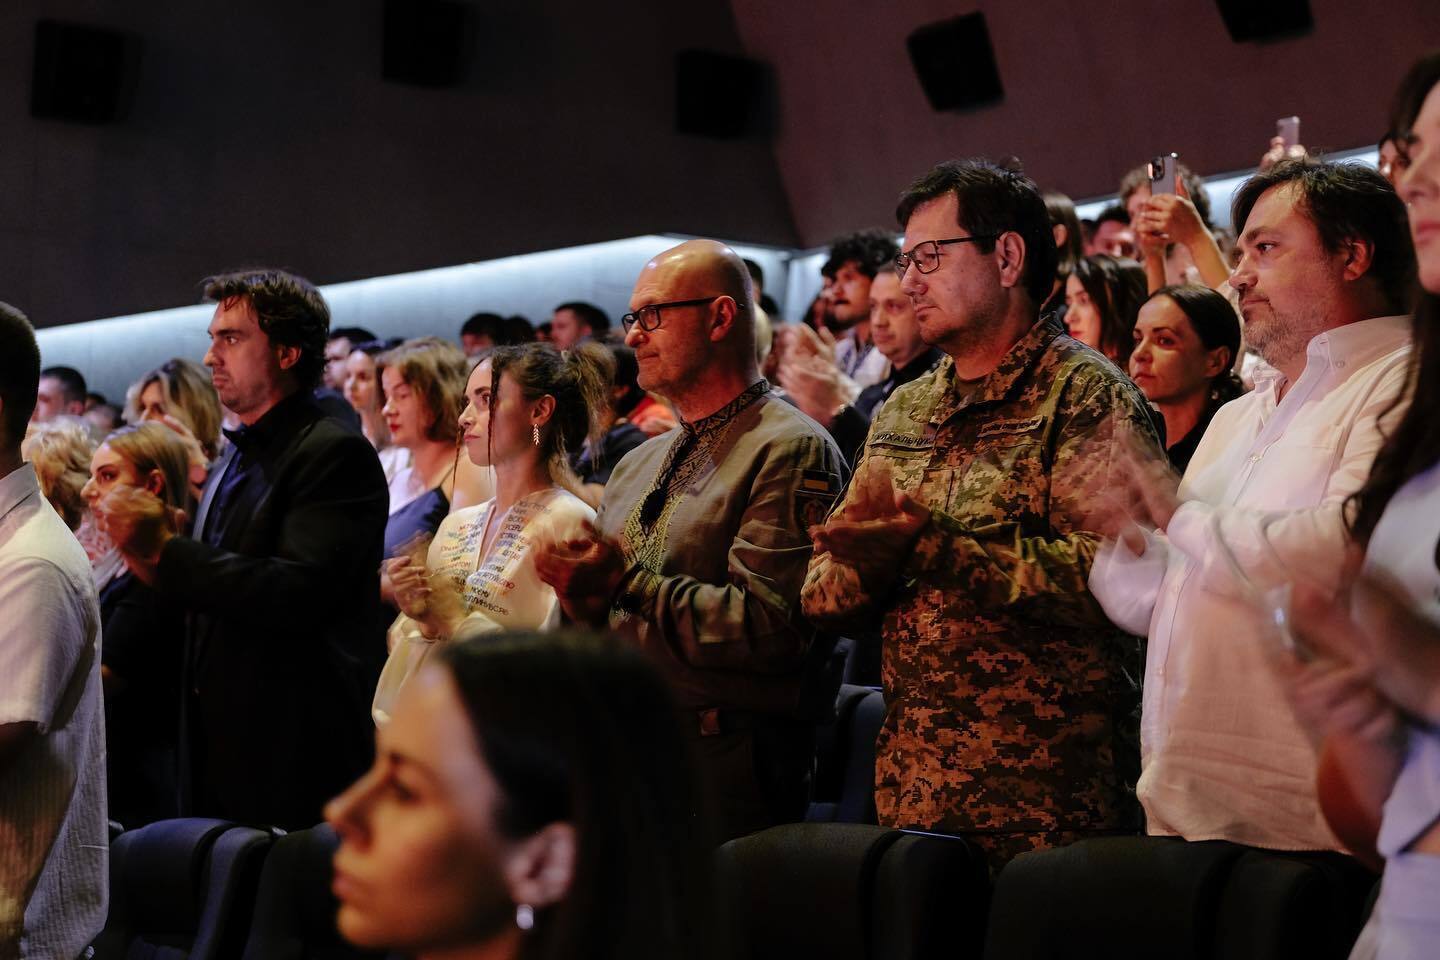 Одесский международный кинофестиваль начался с минуты молчания: чем отличается киномероприятие этого года и где оно проходит